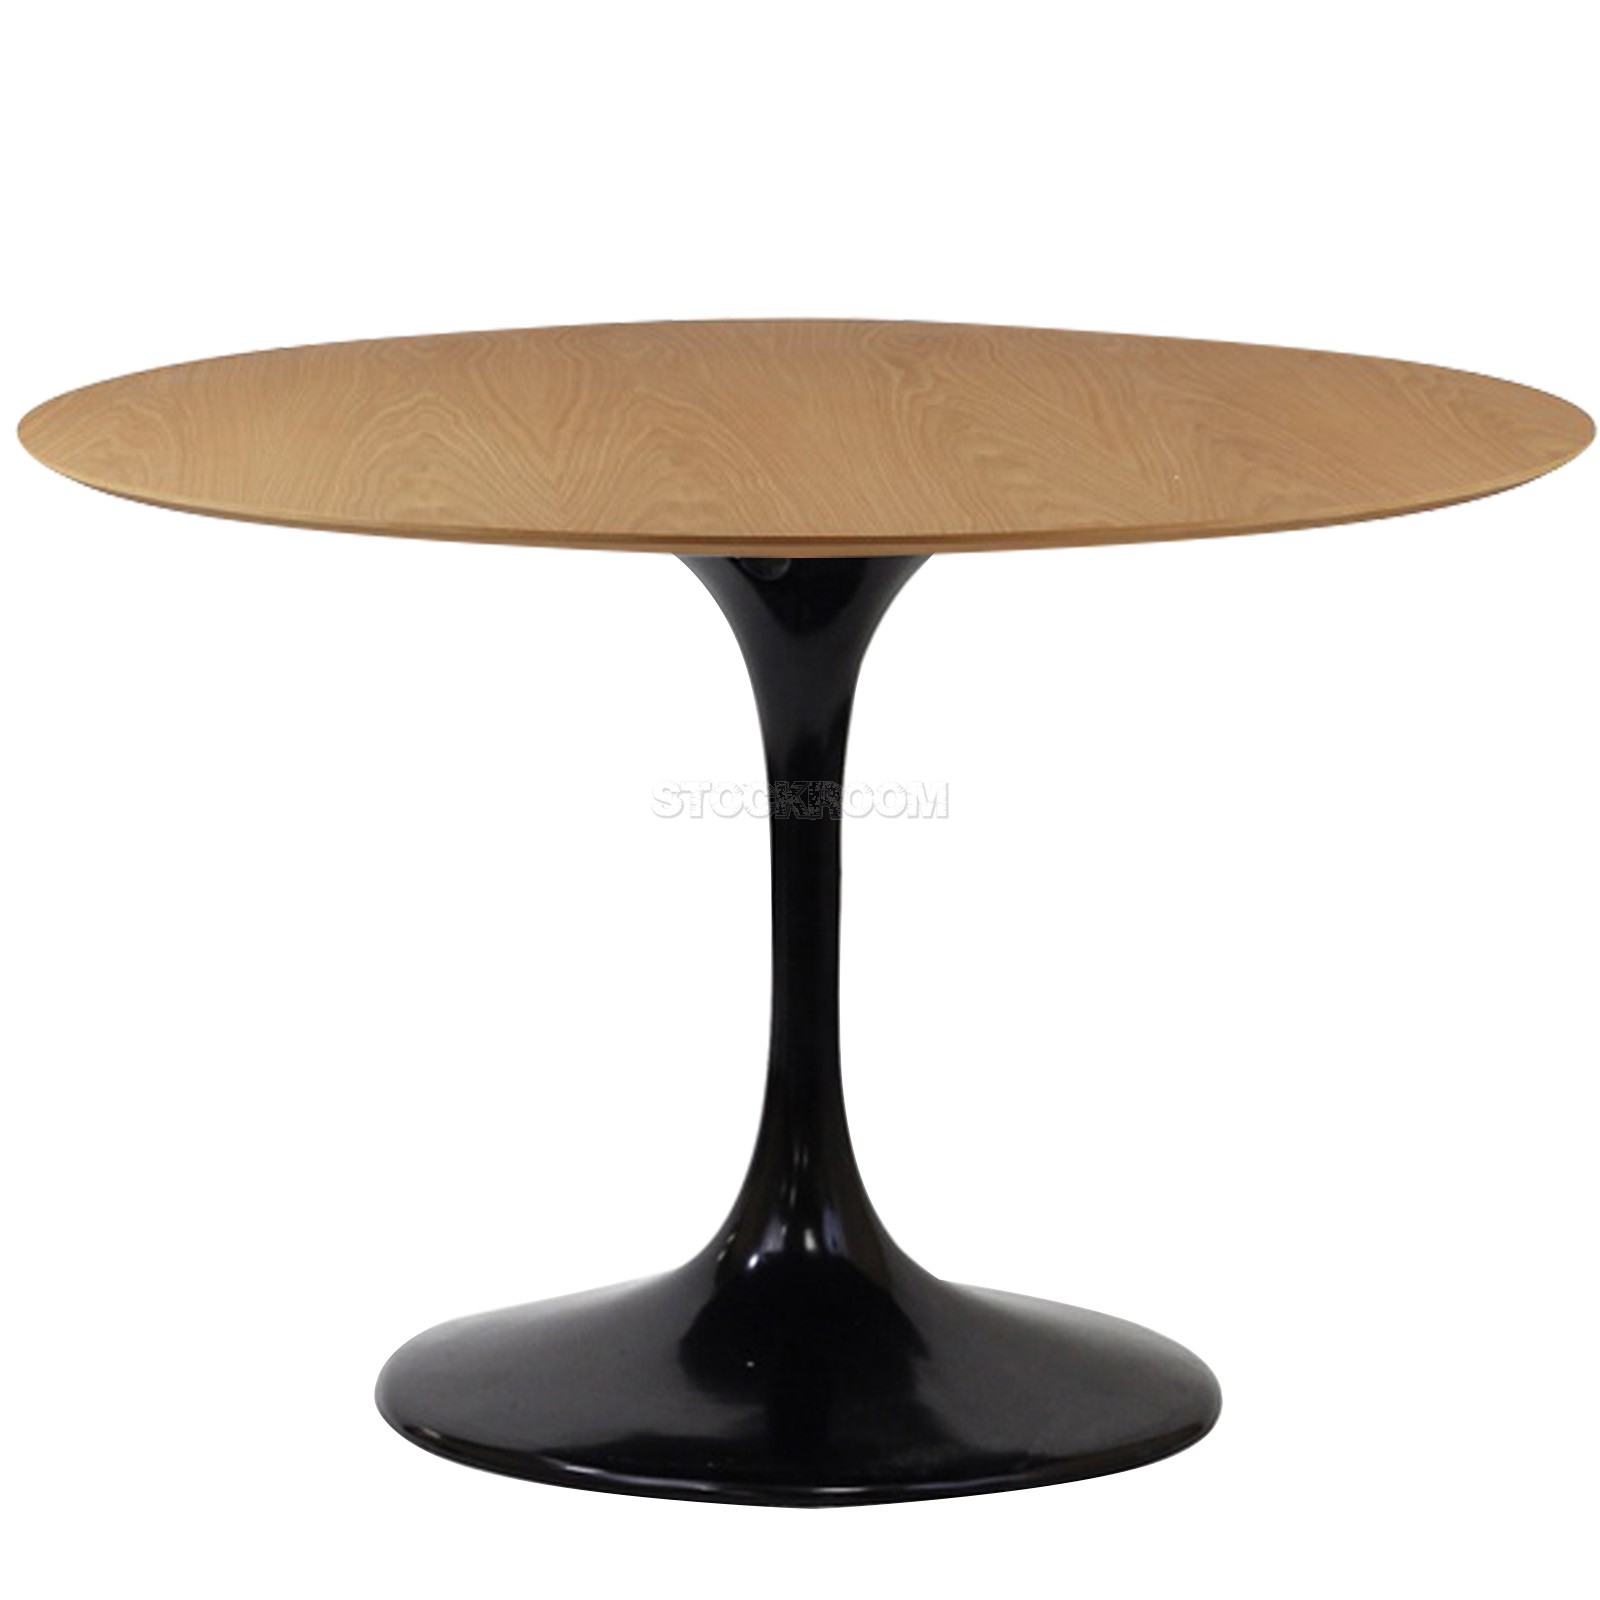 Eero Saarinen Tulip Style Round Table - Timber